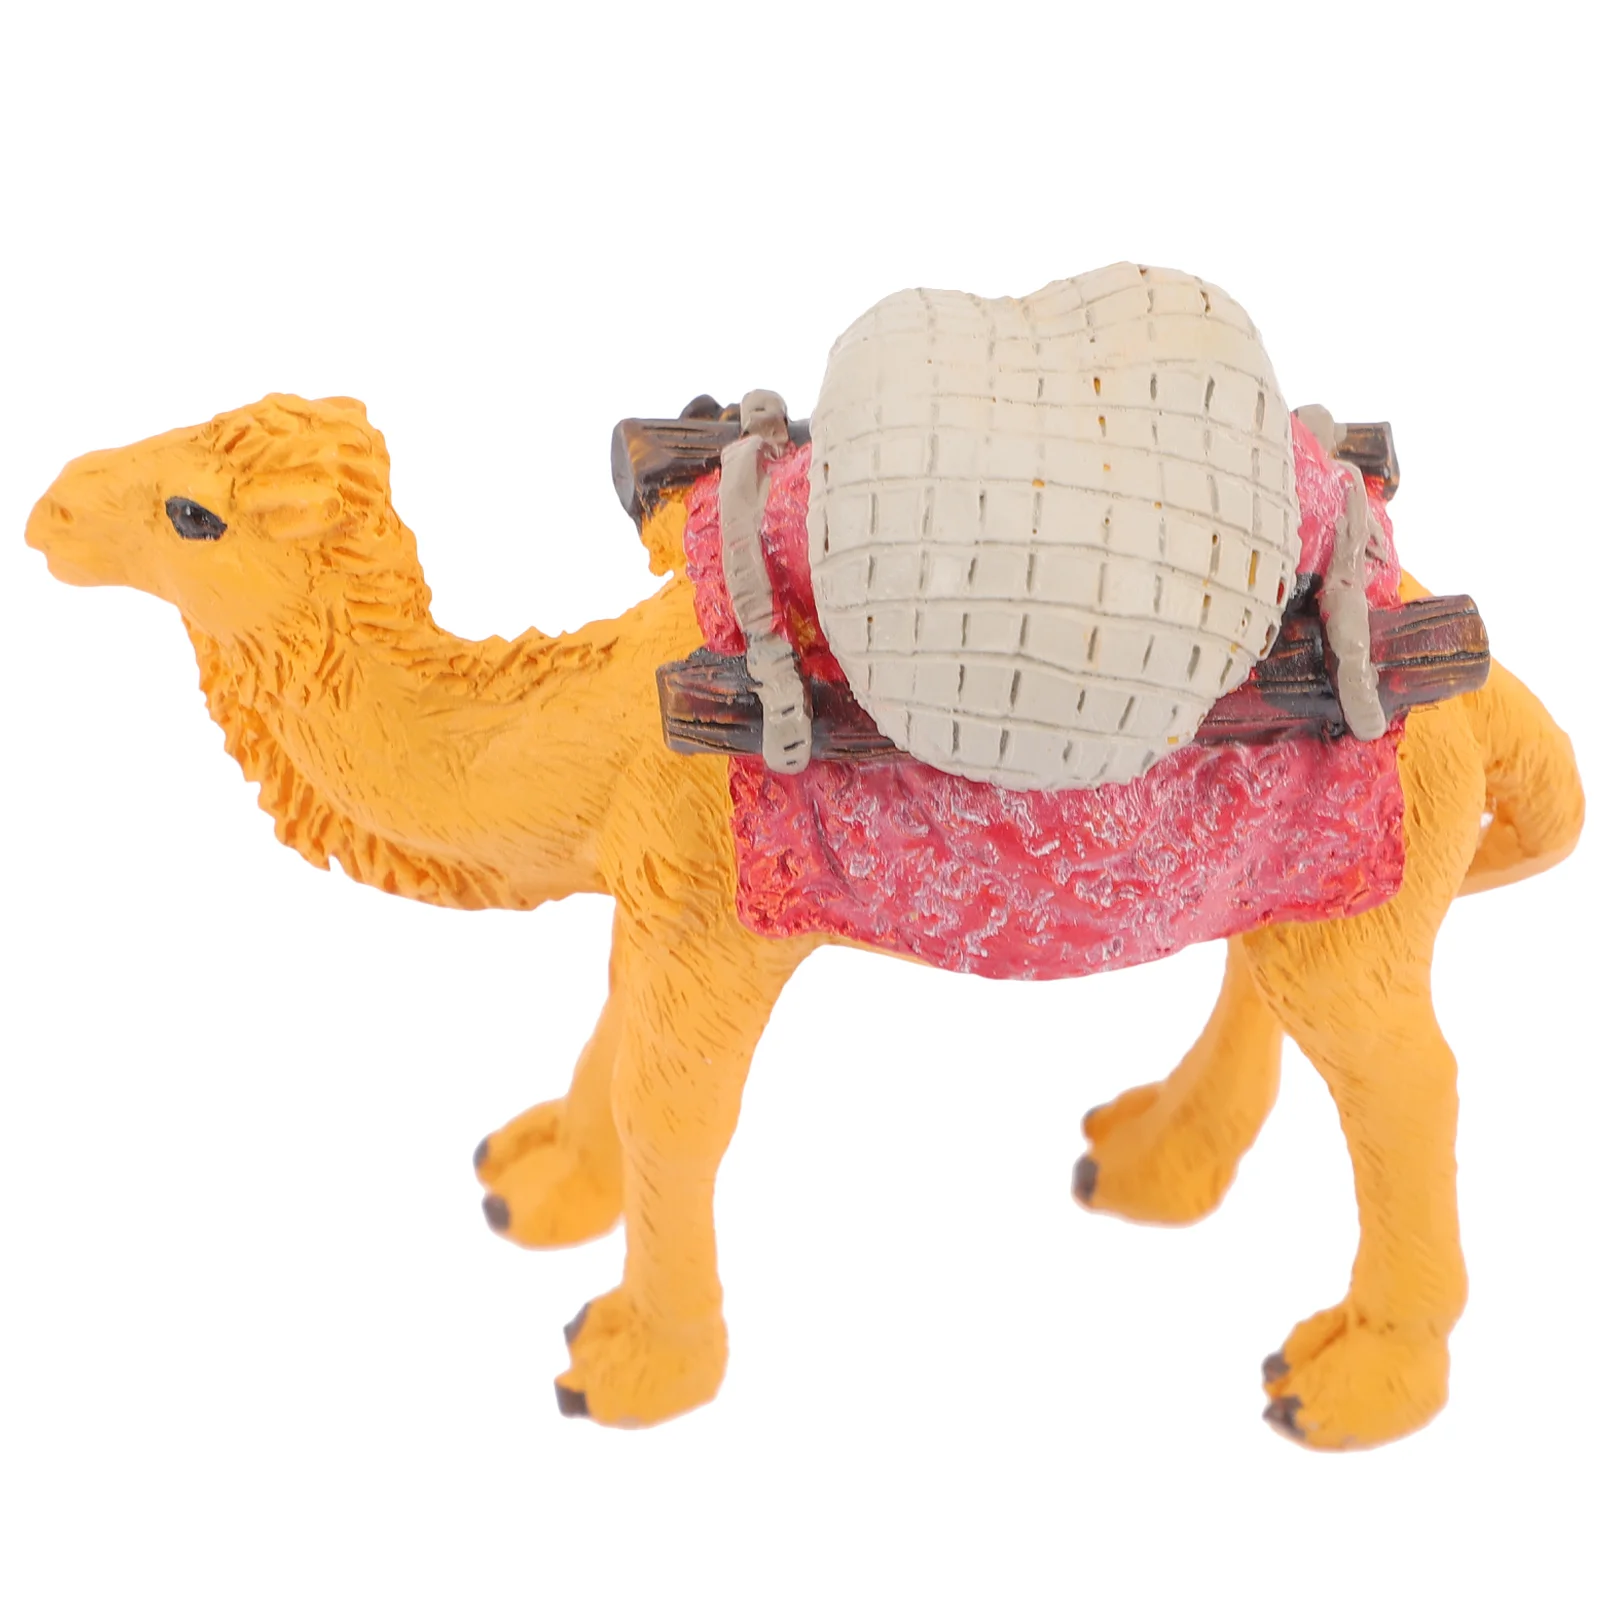 

Miniature Toys Miniature Camel Statue Camel Figurine Camel Sculpture Llama Toy Desert Animals Decorate Mini Simulation Camel